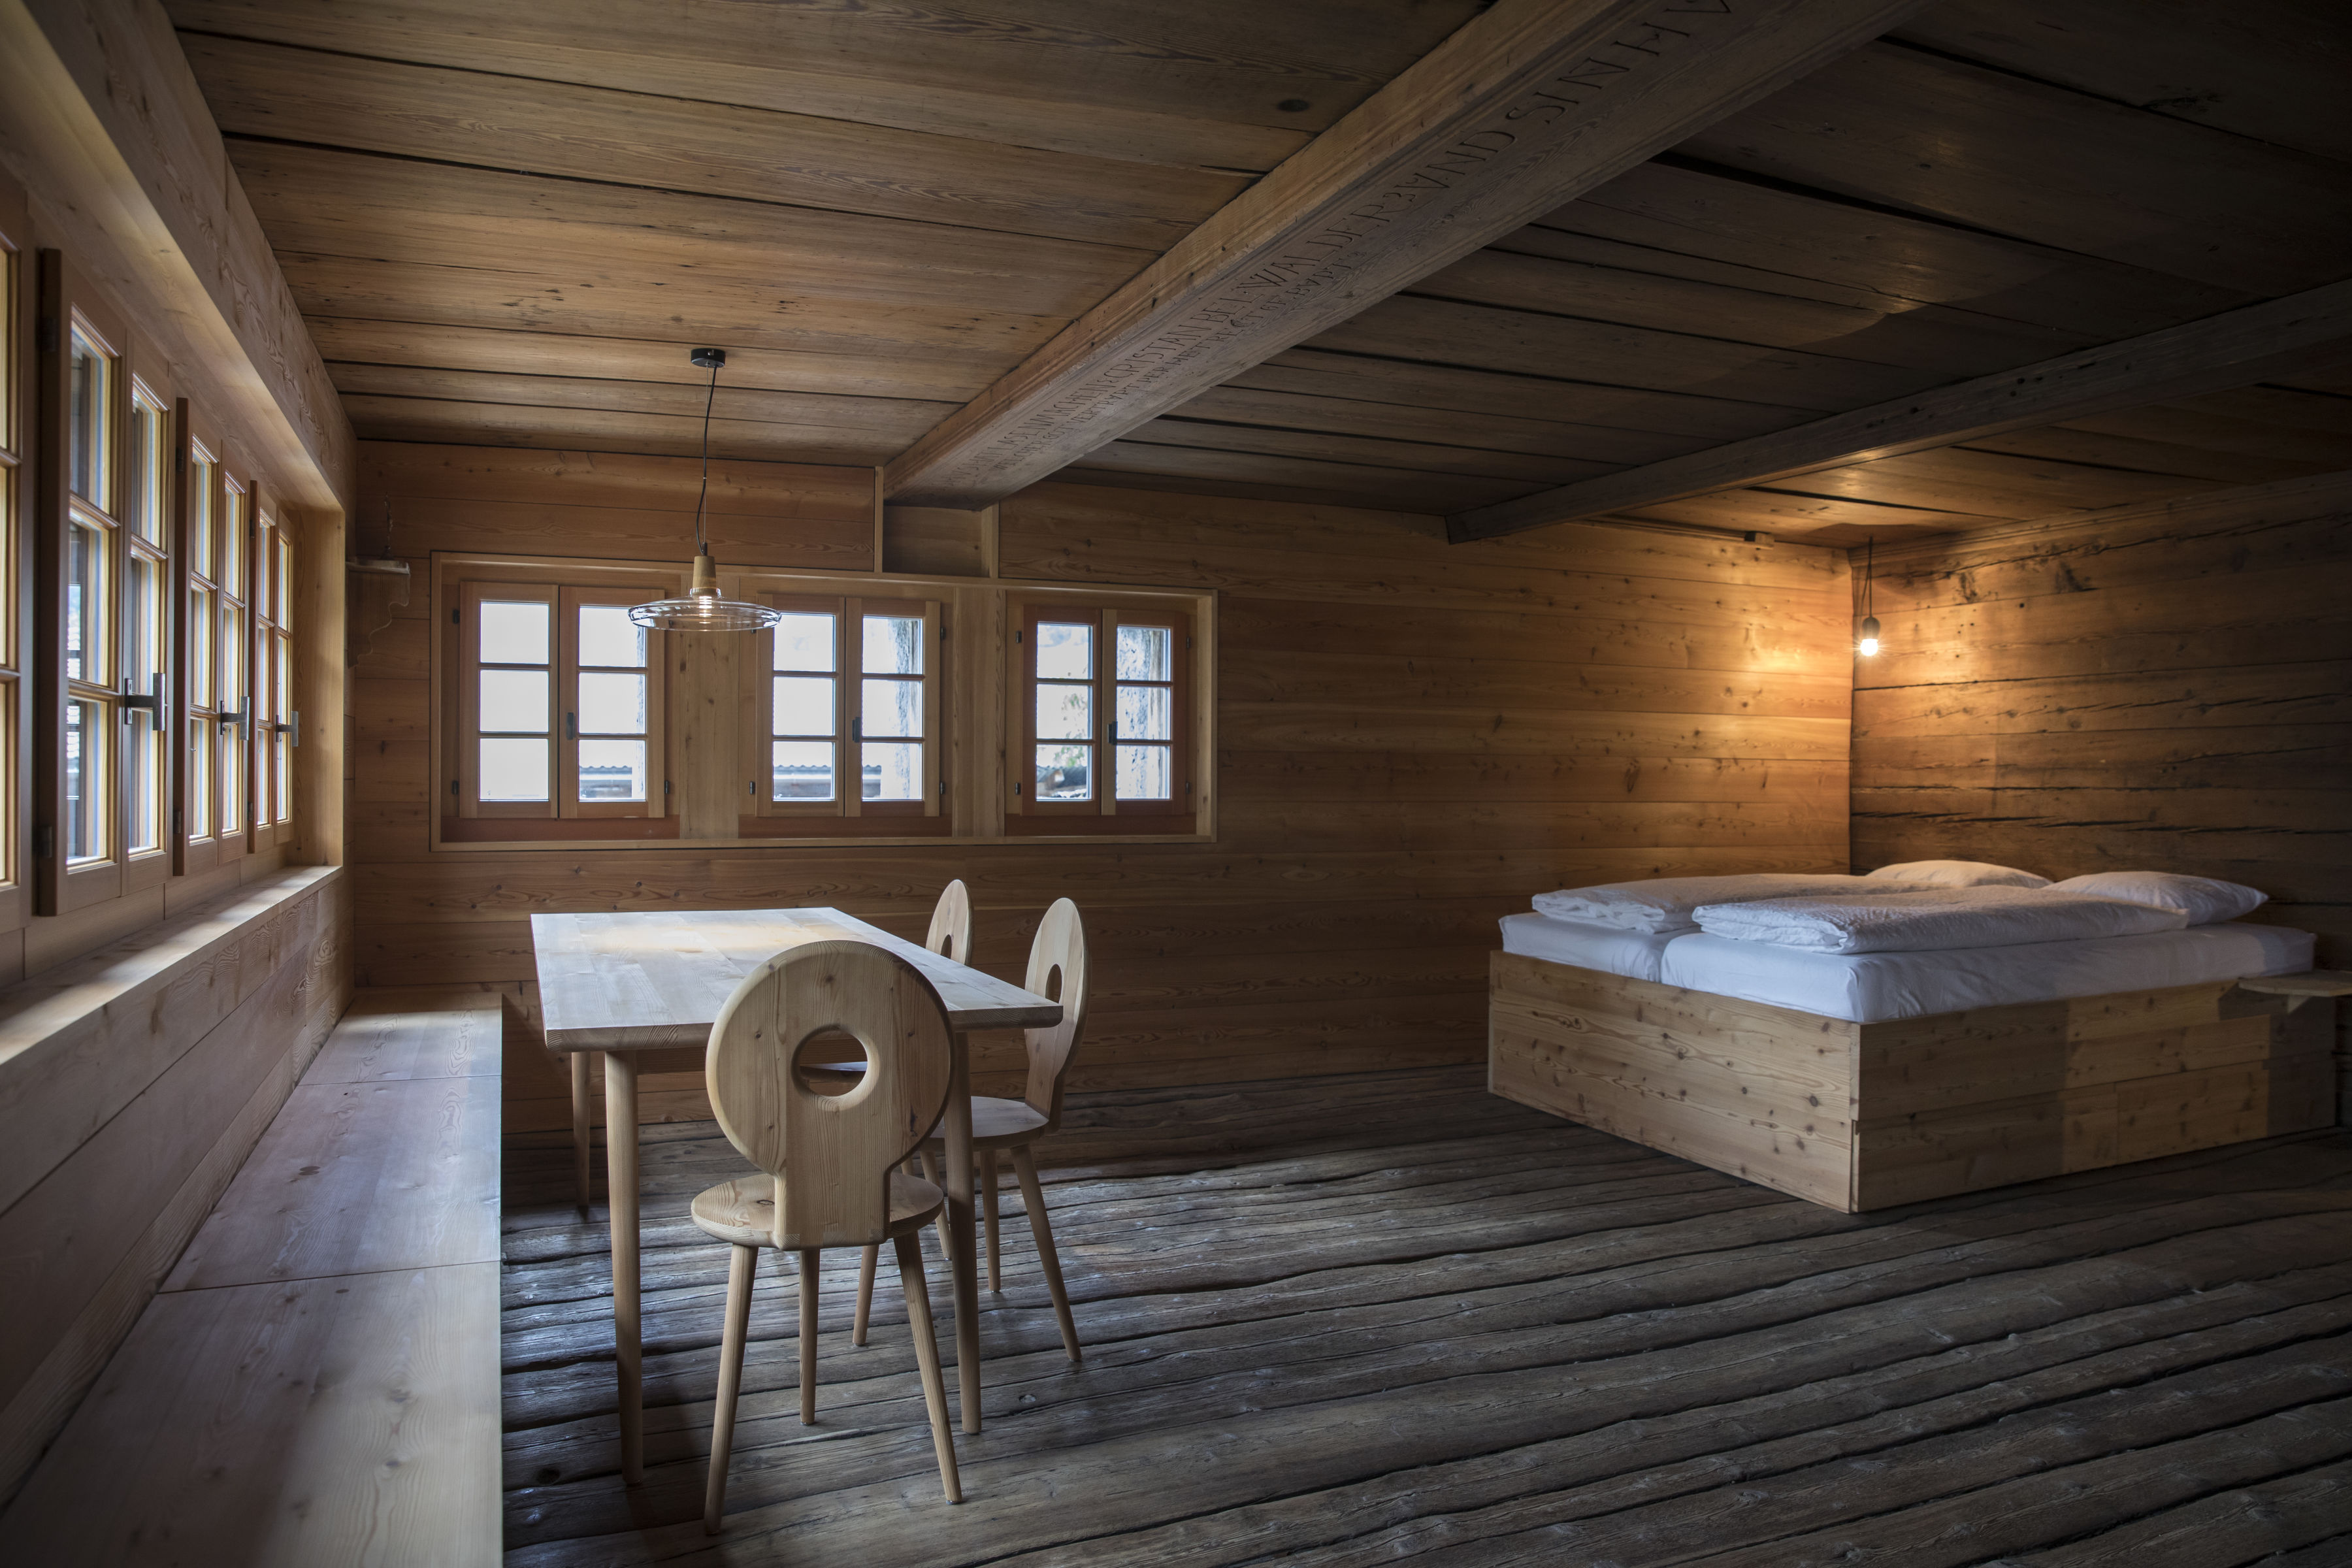 Chalet renové avec lit, chaises et table en bois. Meubles valaisans Valais Wallis Schweiz Switzerland Suisse